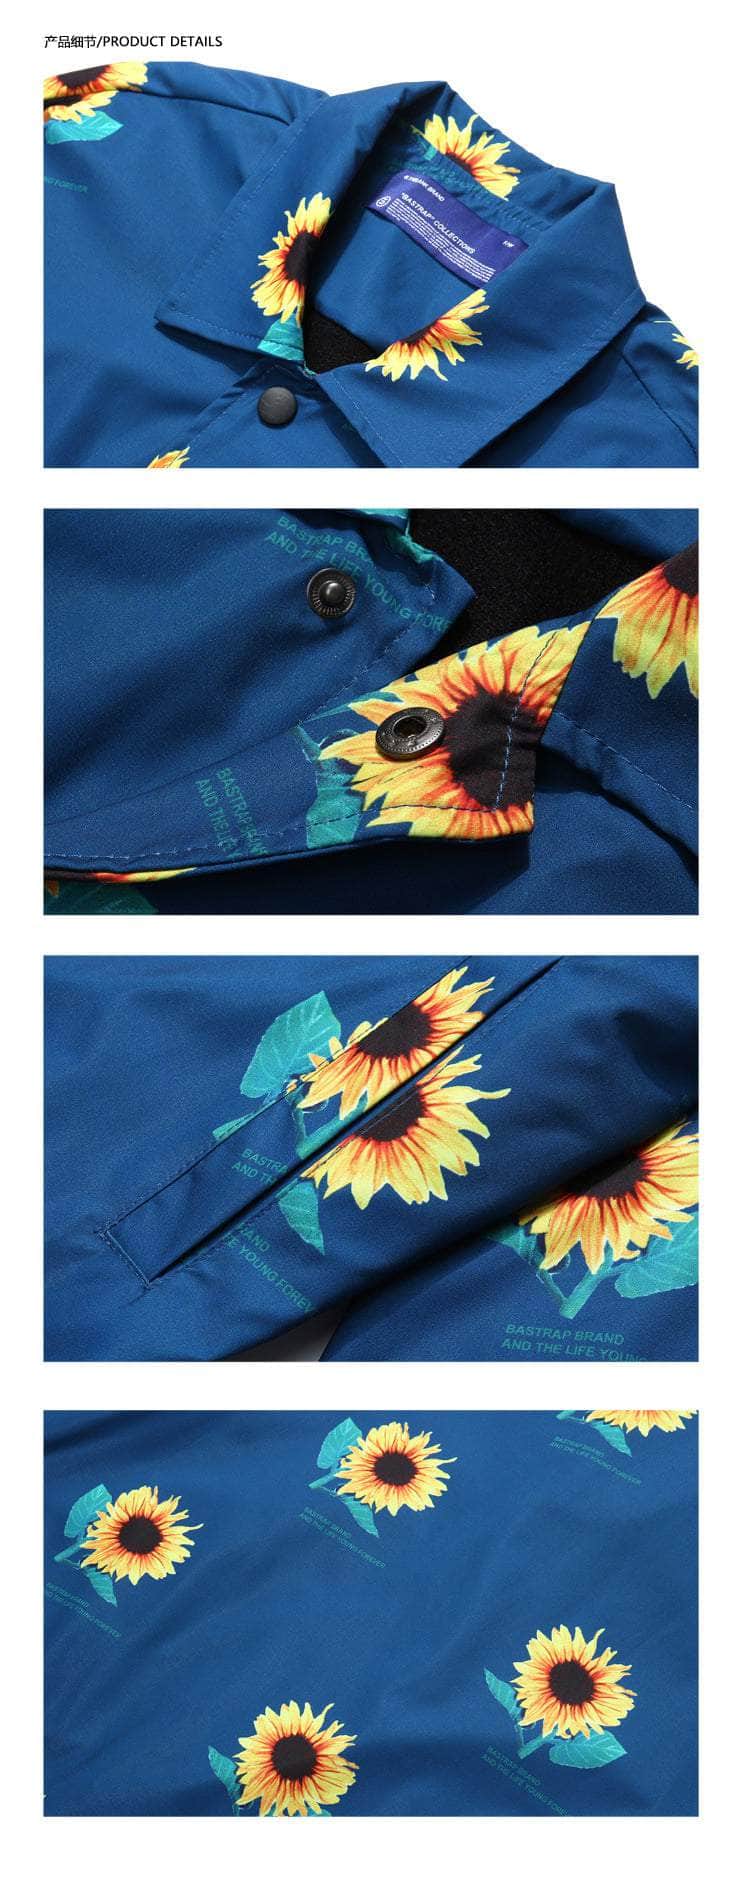 Sunflower Windbreaker Jacket